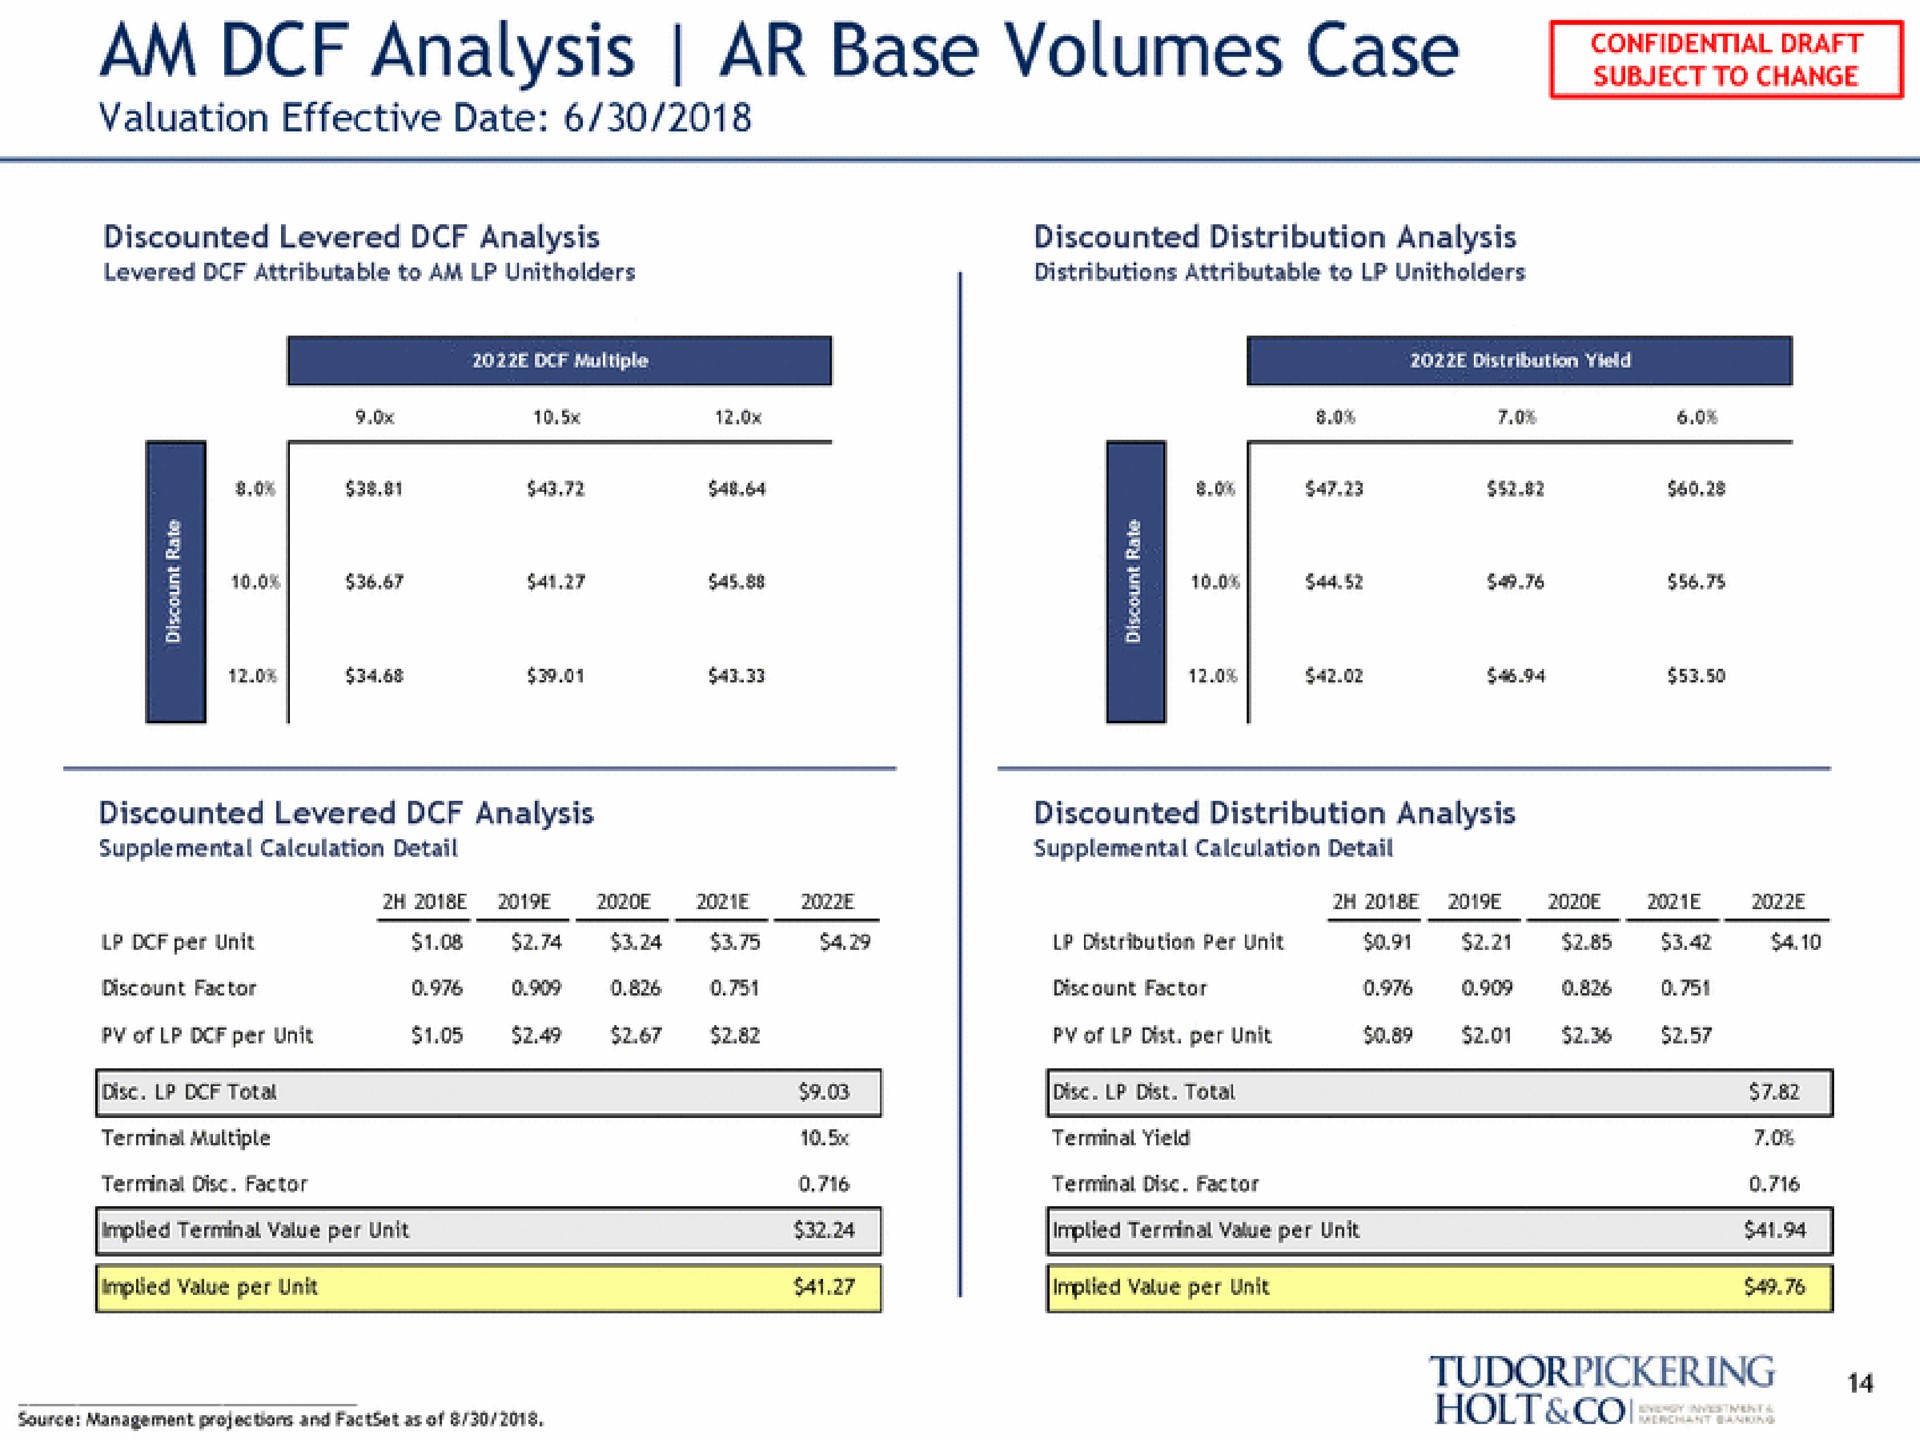 am analysis base volumes case | Tudor, Pickering, Holt & Co